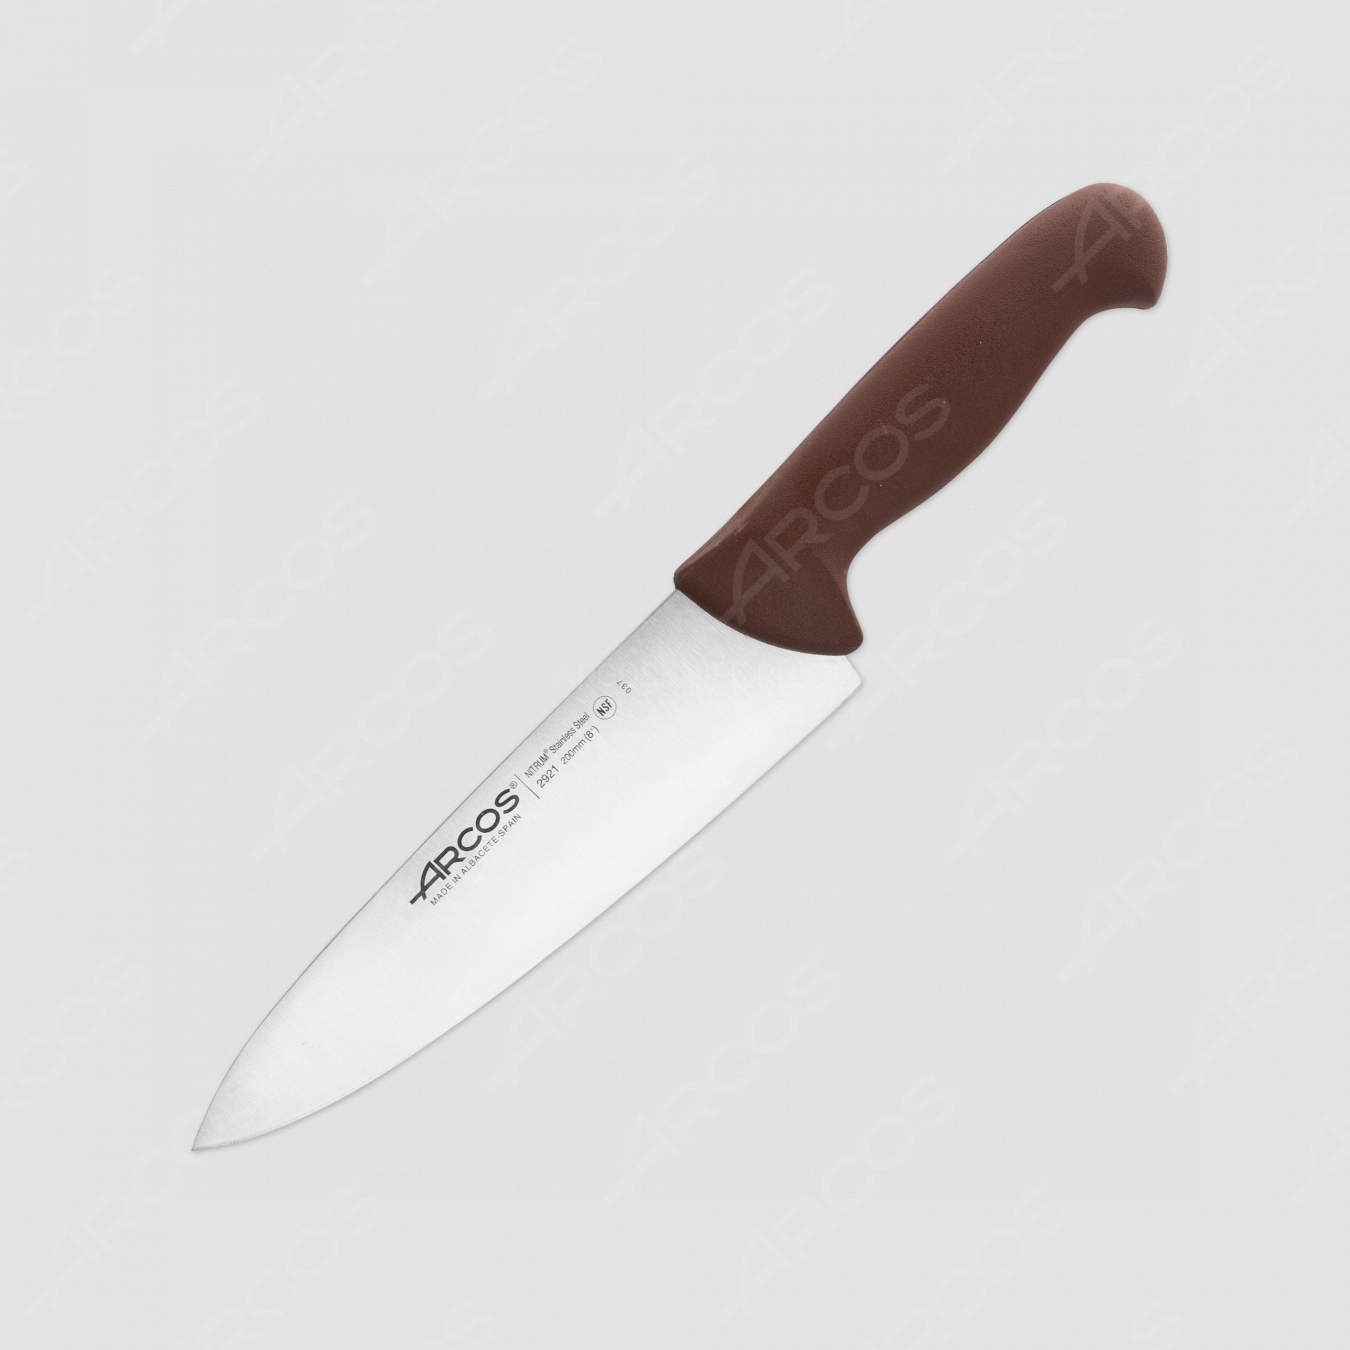 Нож кухонный поварской 20 см, рукоять - коричневая, серия 2900, ARCOS, Испания